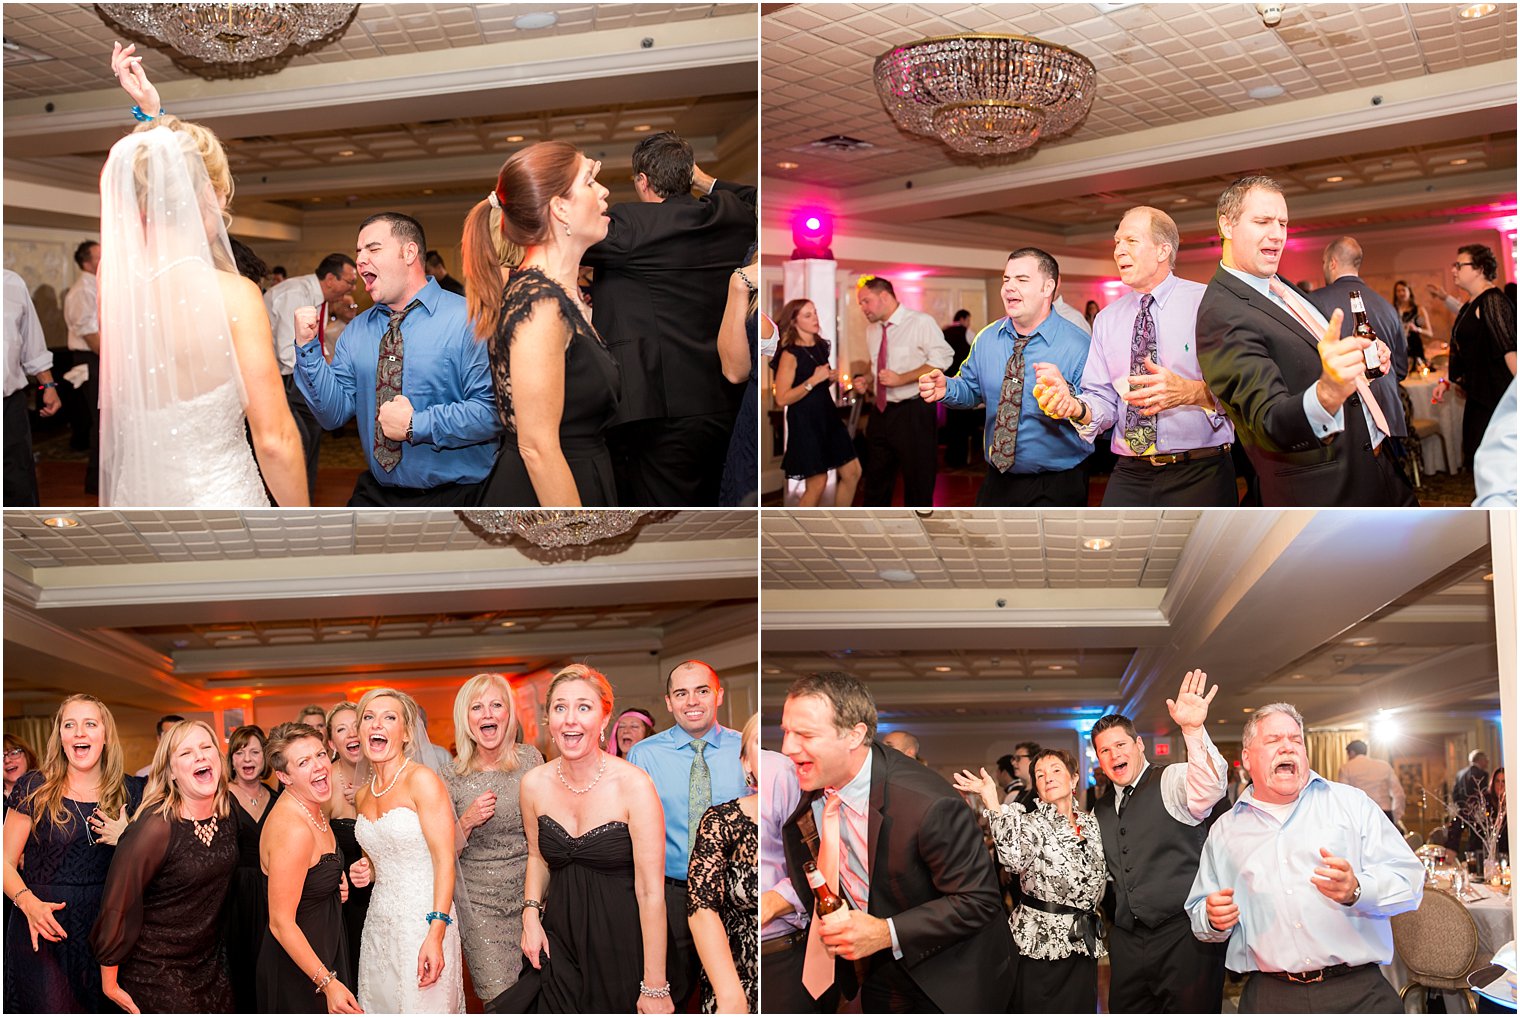 Fun reception dancing photos